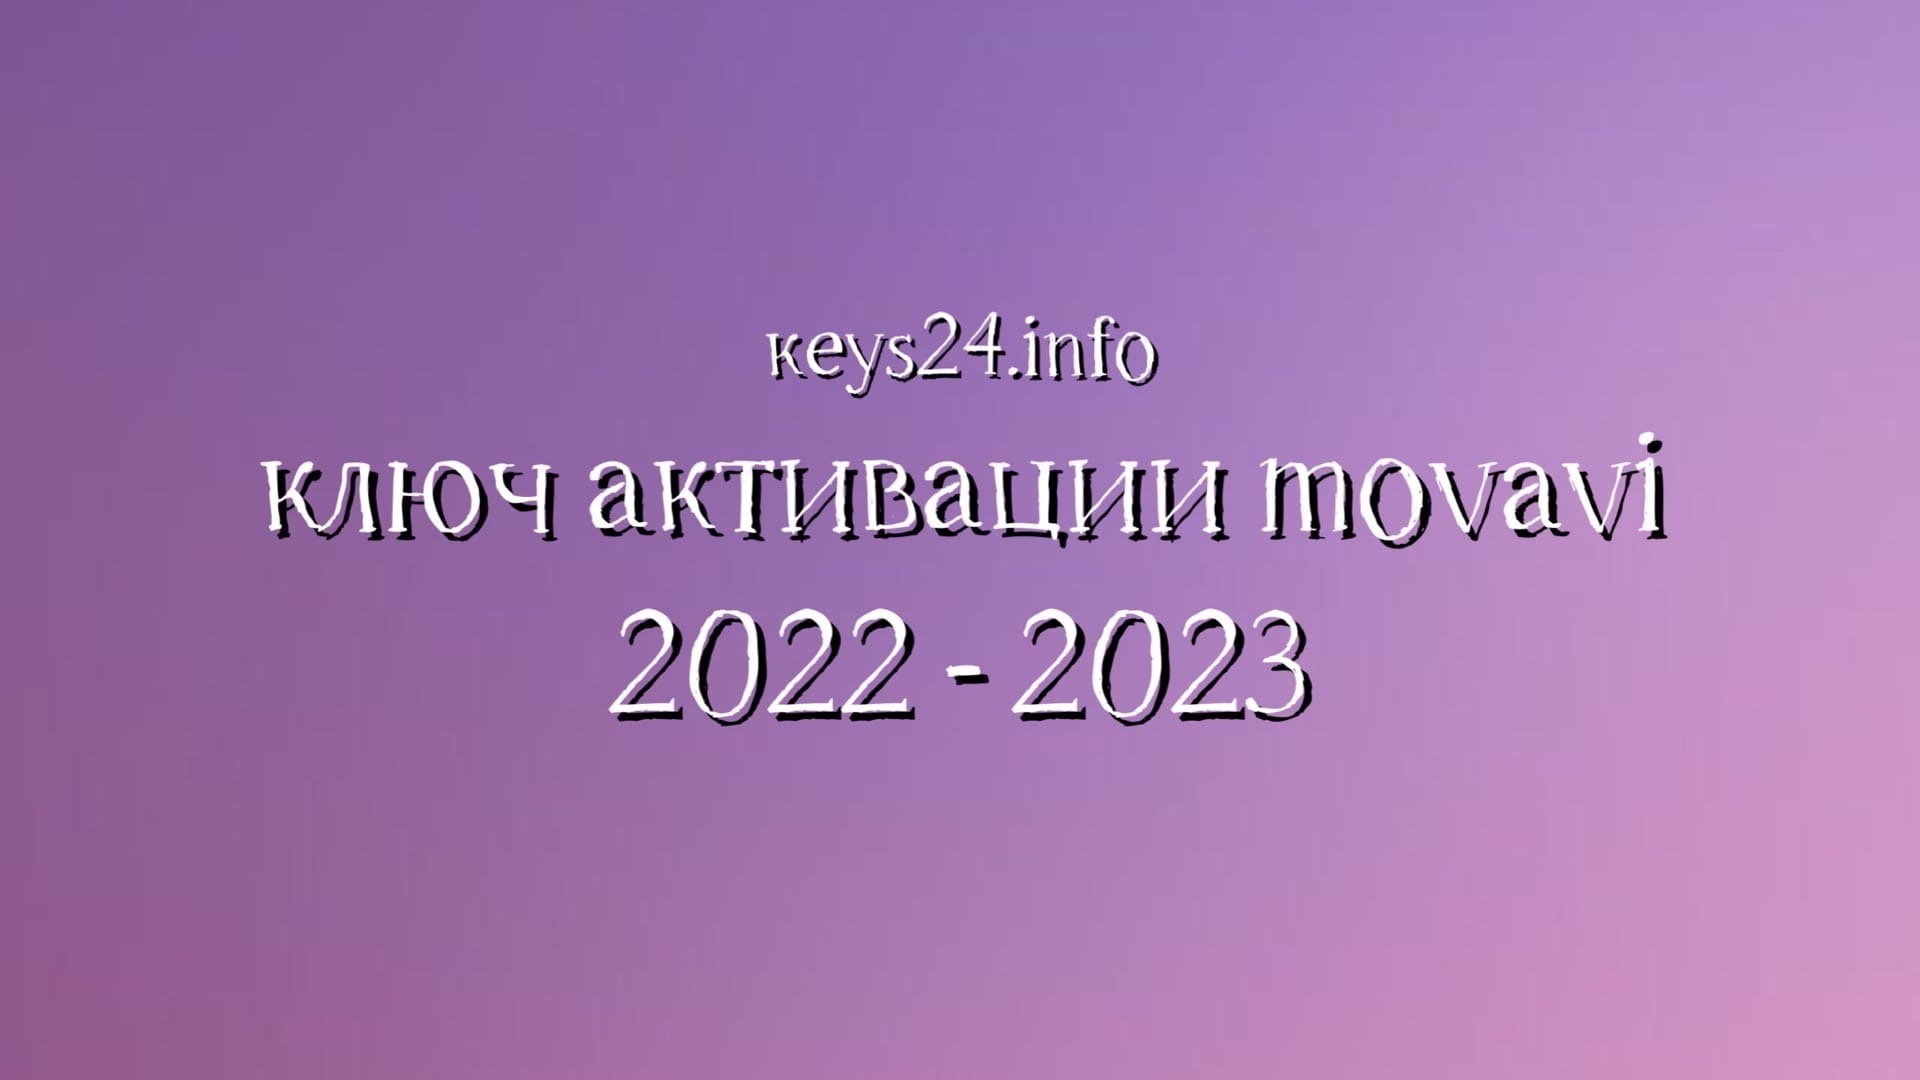 keysformovavi2022-2023